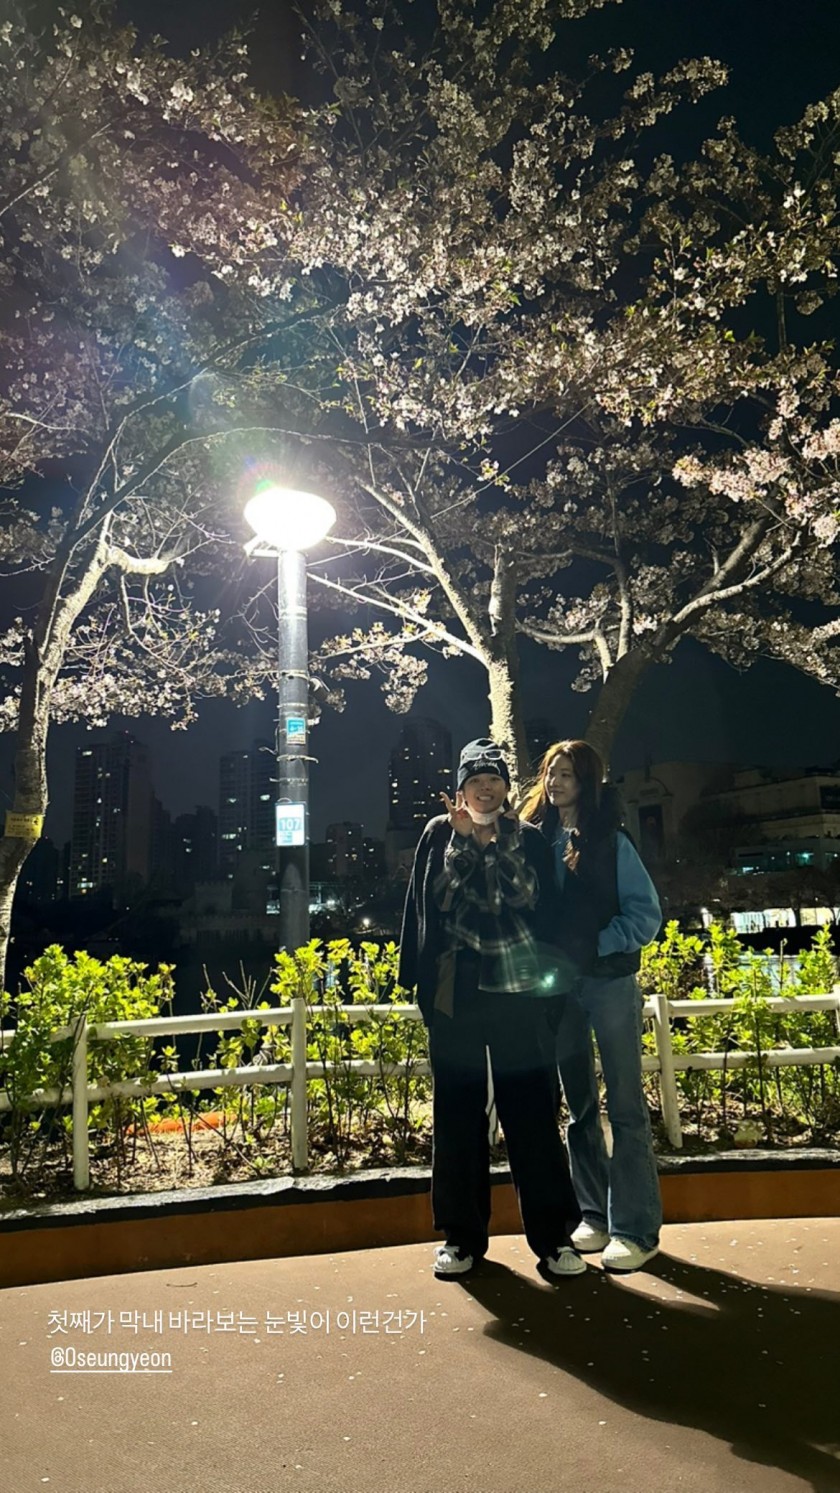 [트와이스] 벚꽃 보러 간 공승연 정연 자매